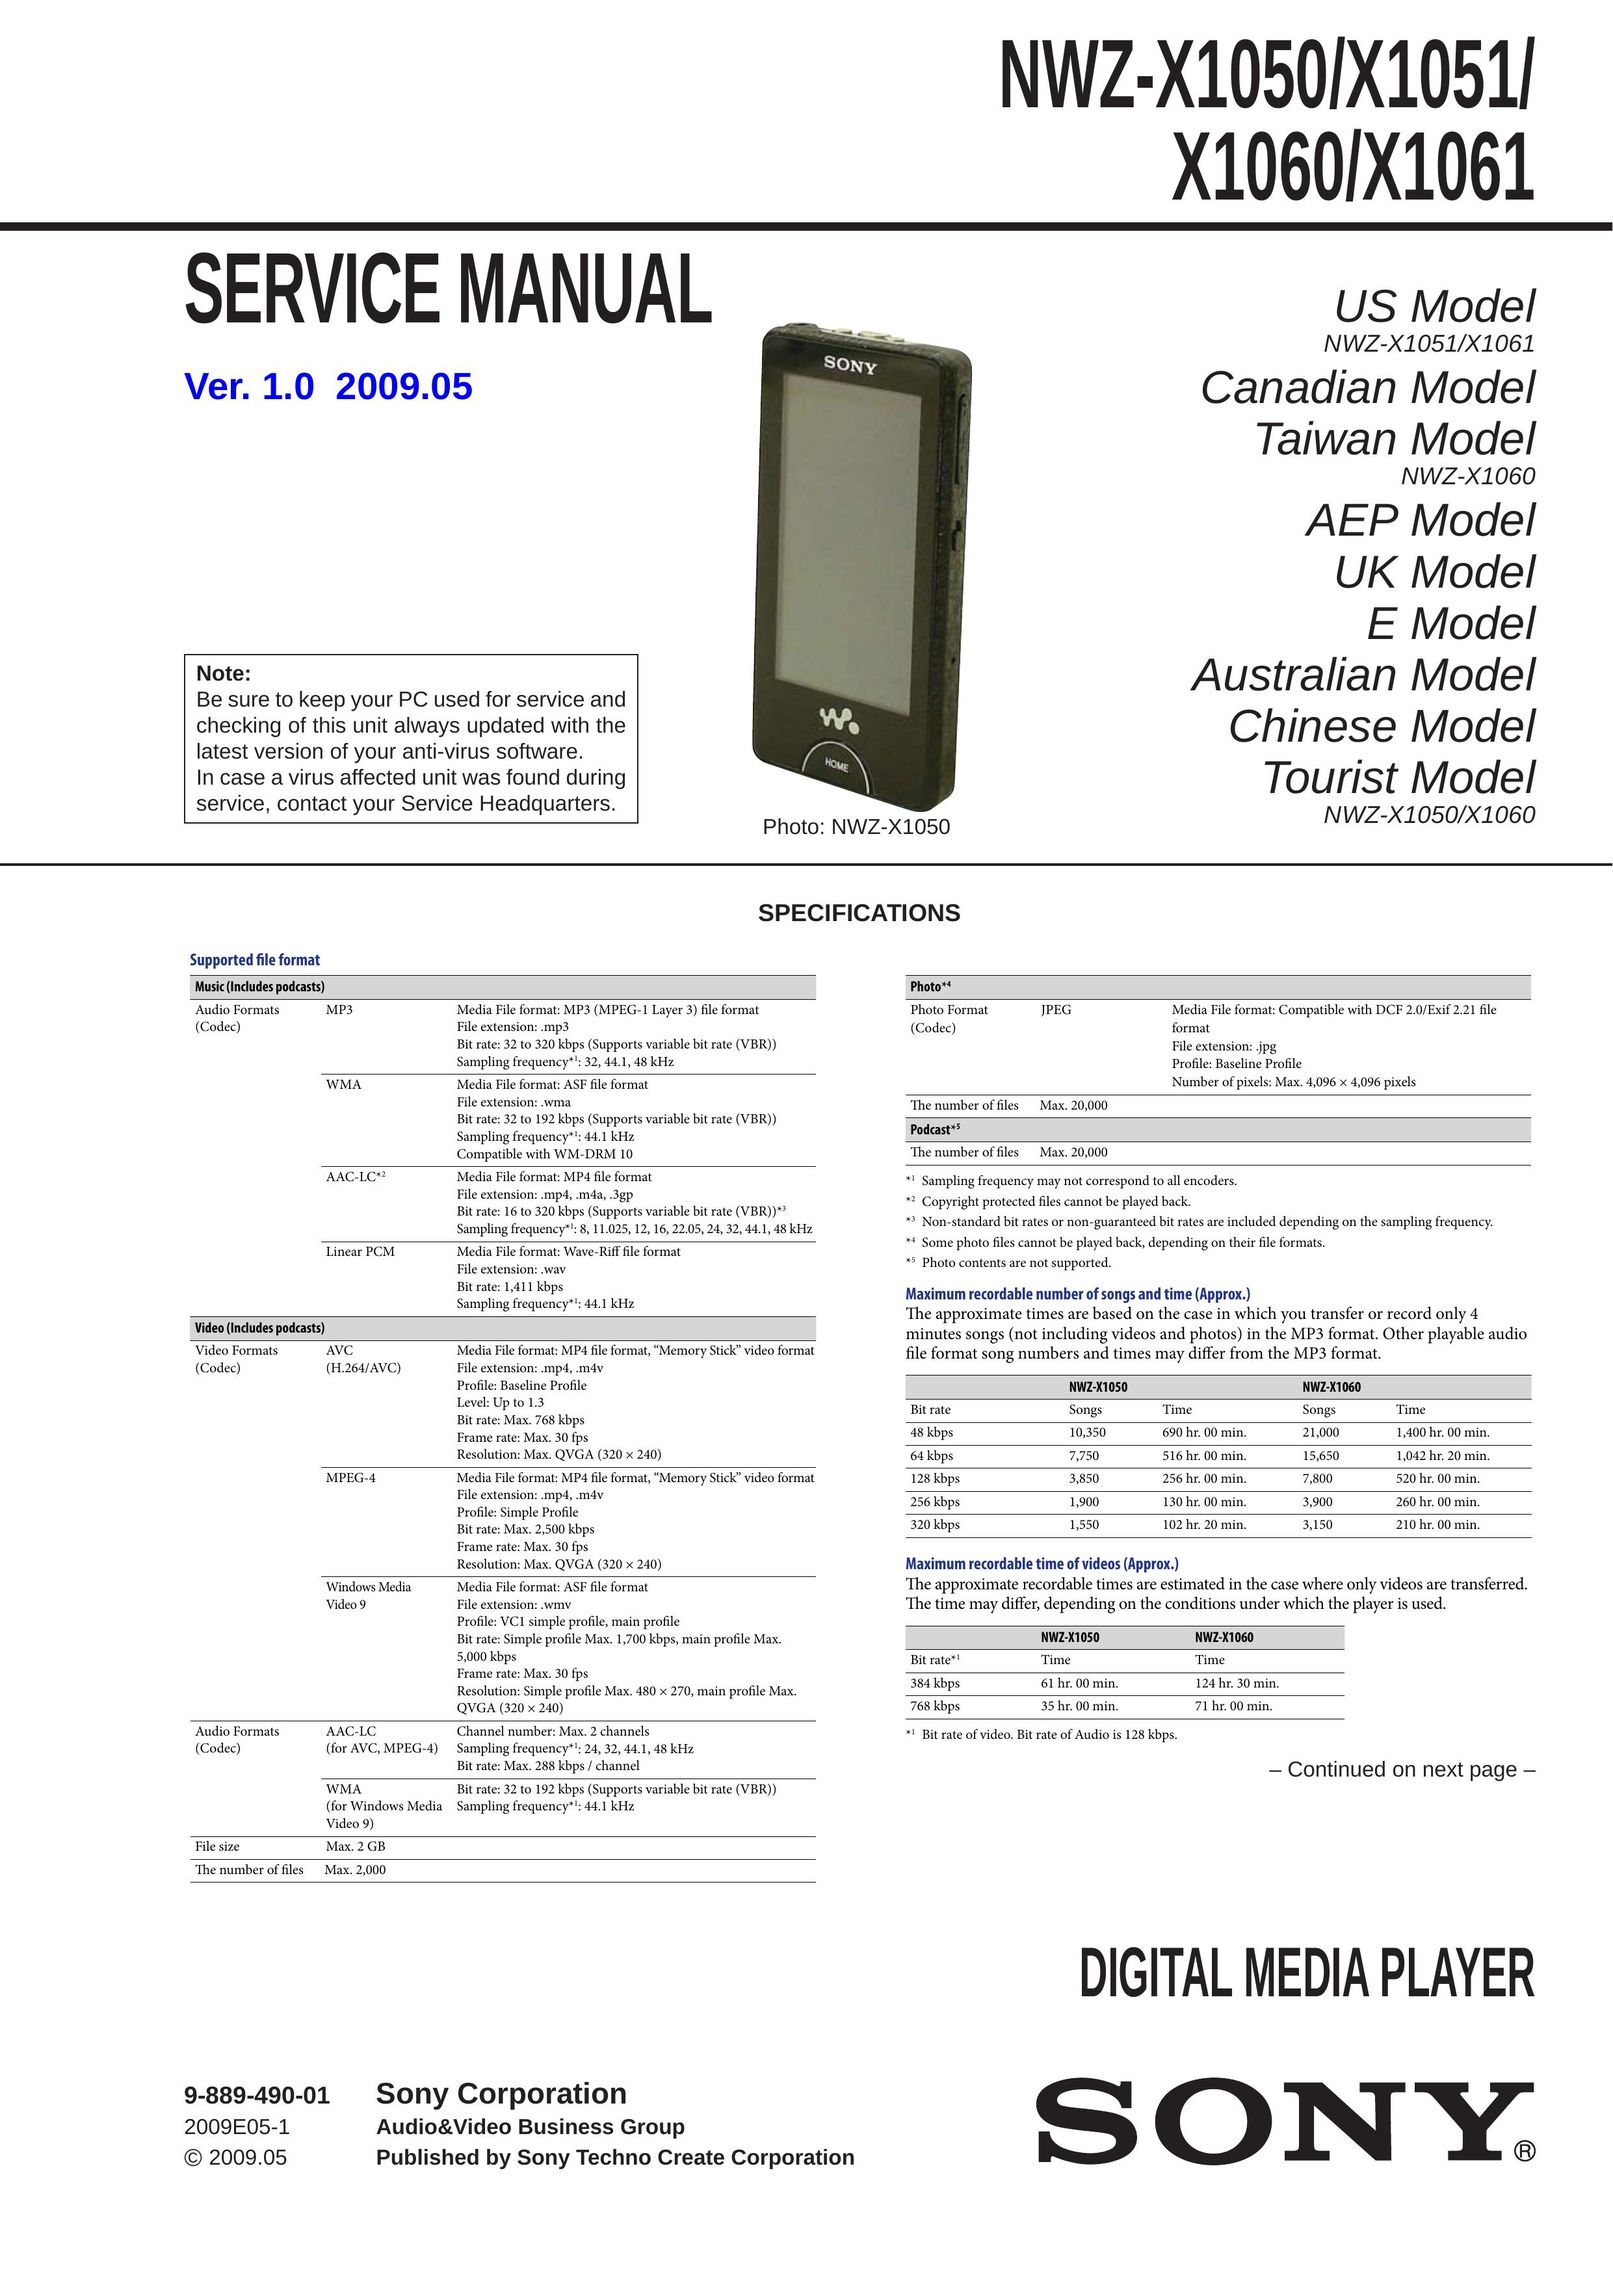 Sony NWZ-X1051 Two-Way Radio User Manual